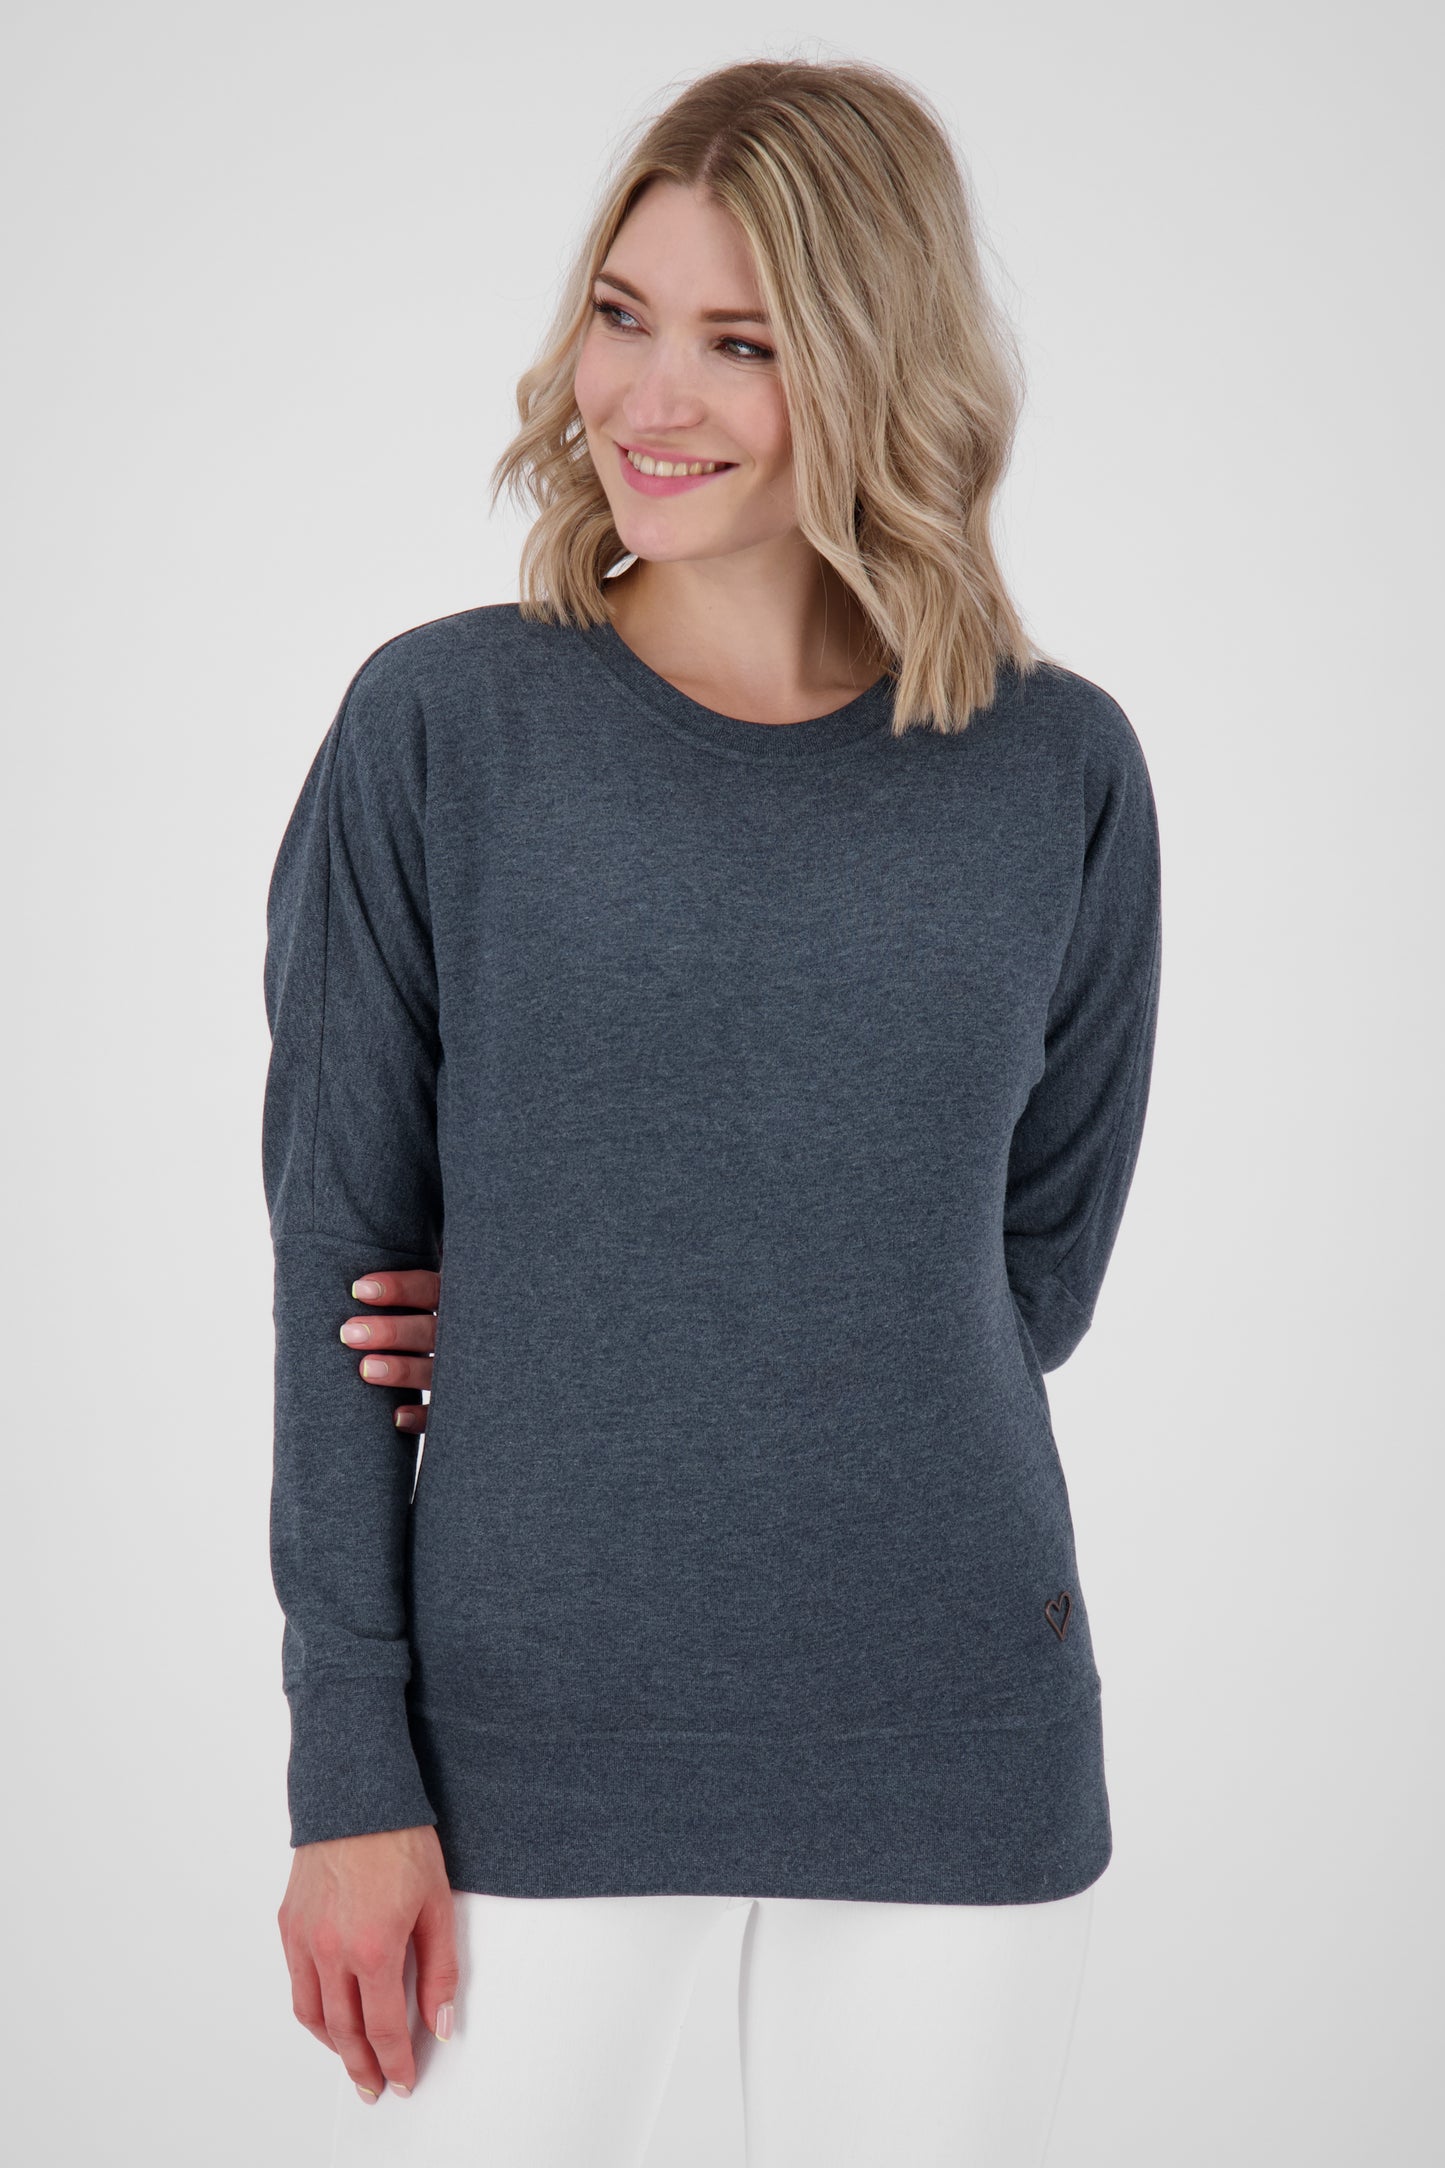 DarinAK A Sweater für Damen - Trendiger und farbenfroher Sweatpullover Dunkelblau